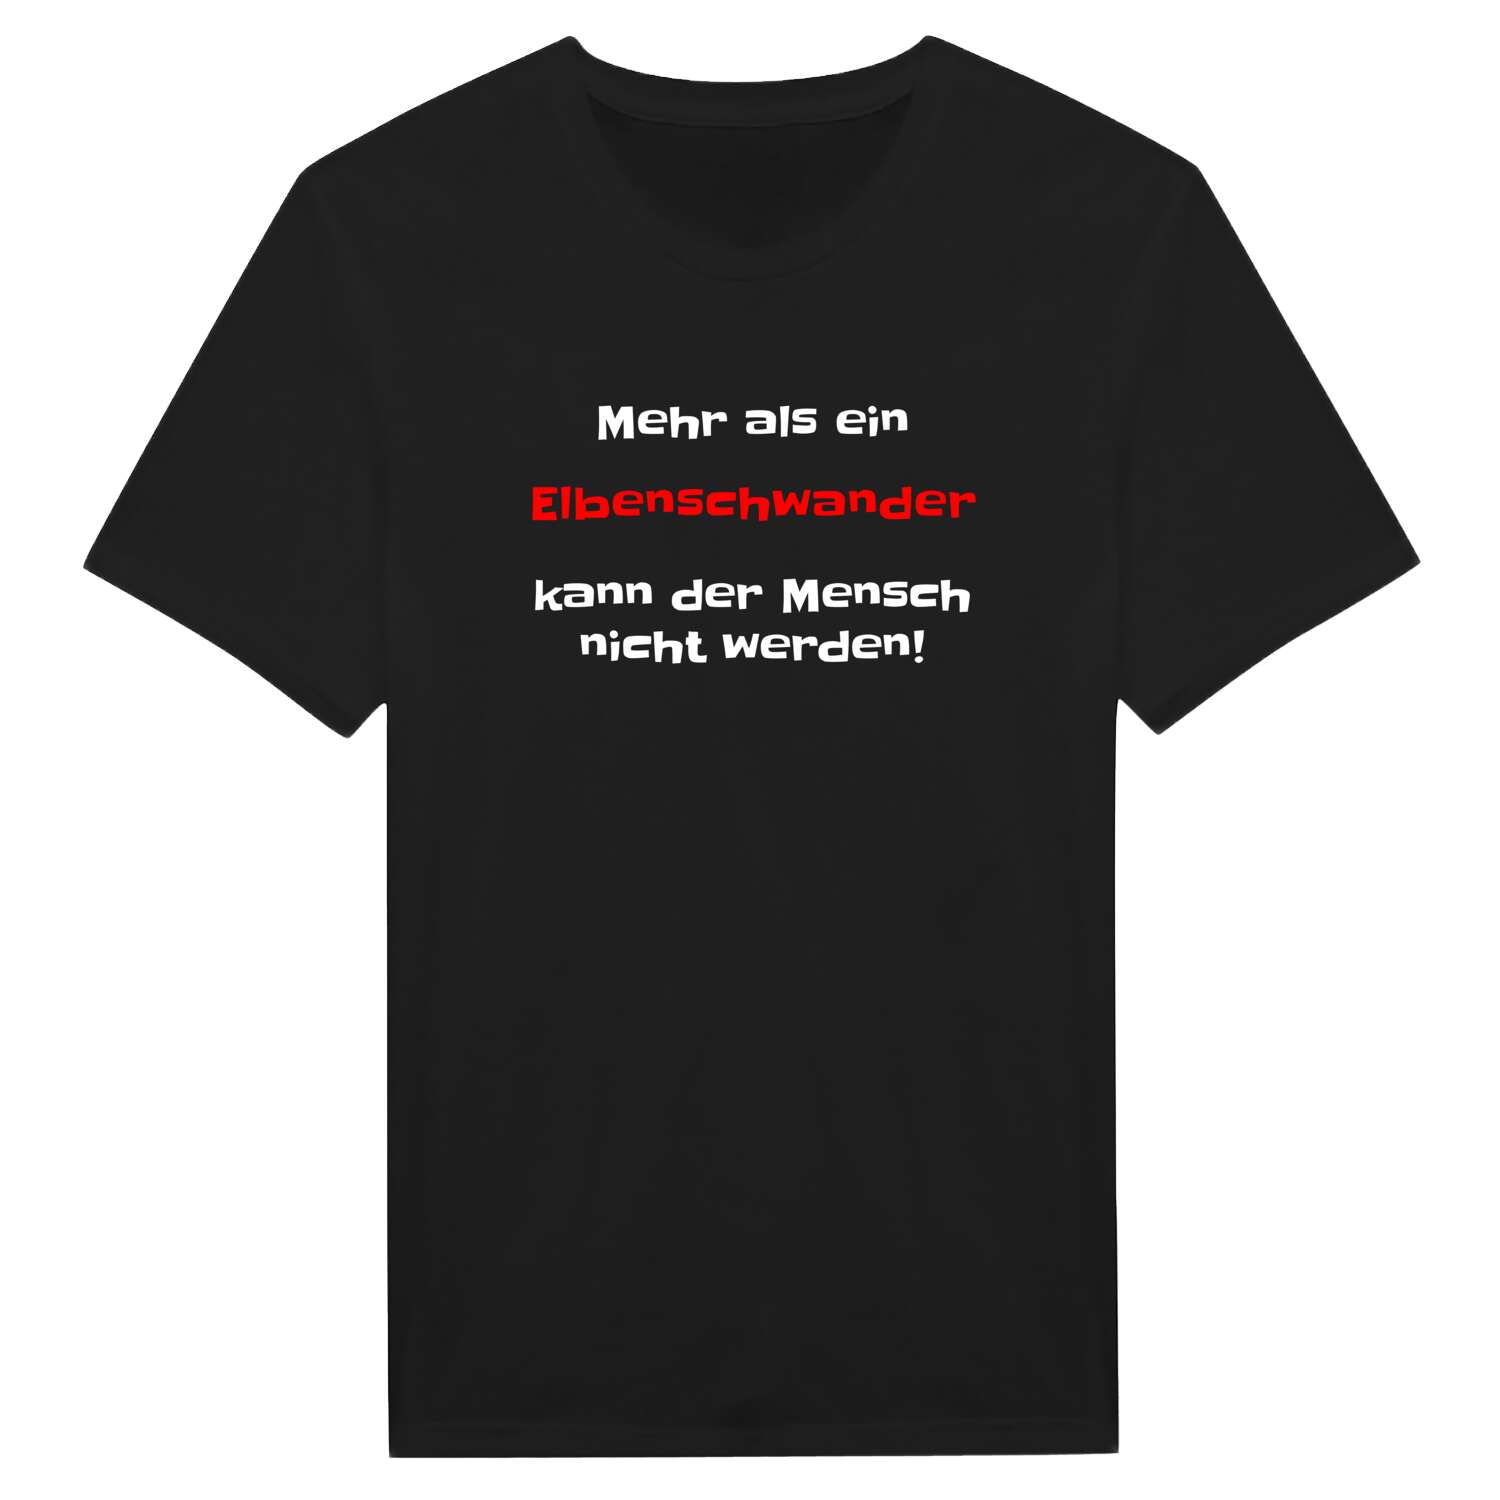 Elbenschwand T-Shirt »Mehr als ein«